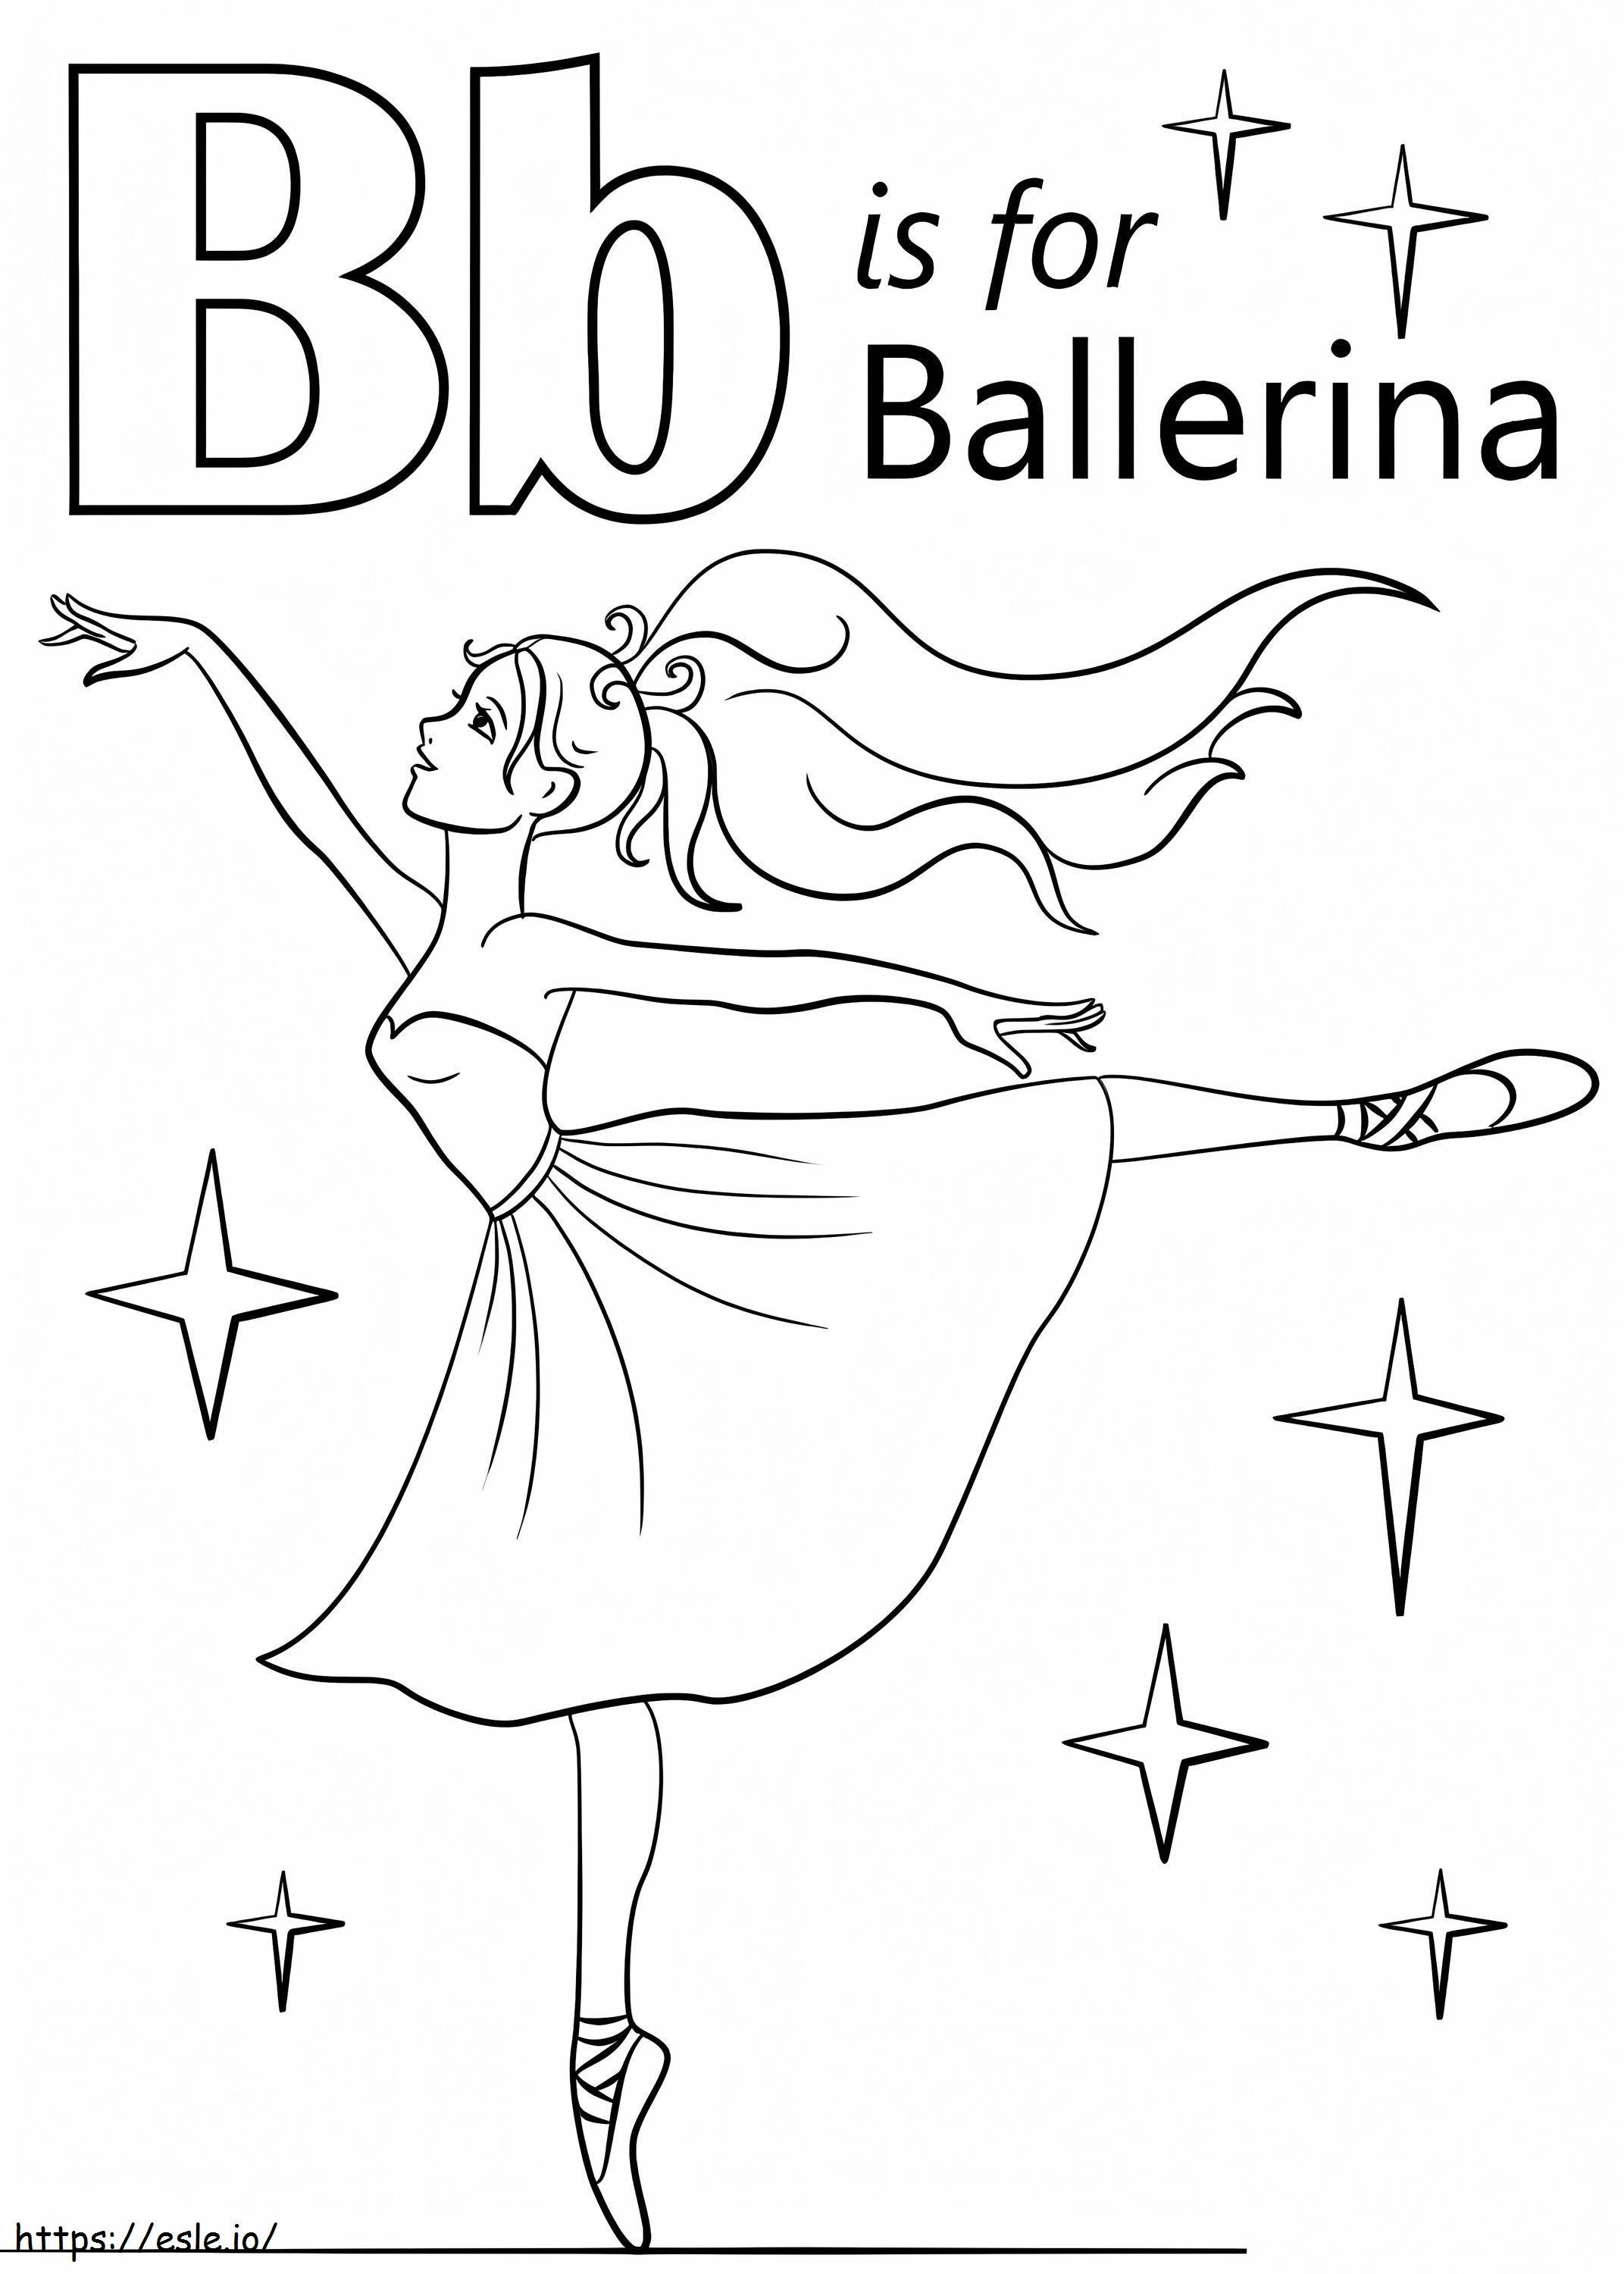 Ballerinabrief B kleurplaat kleurplaat